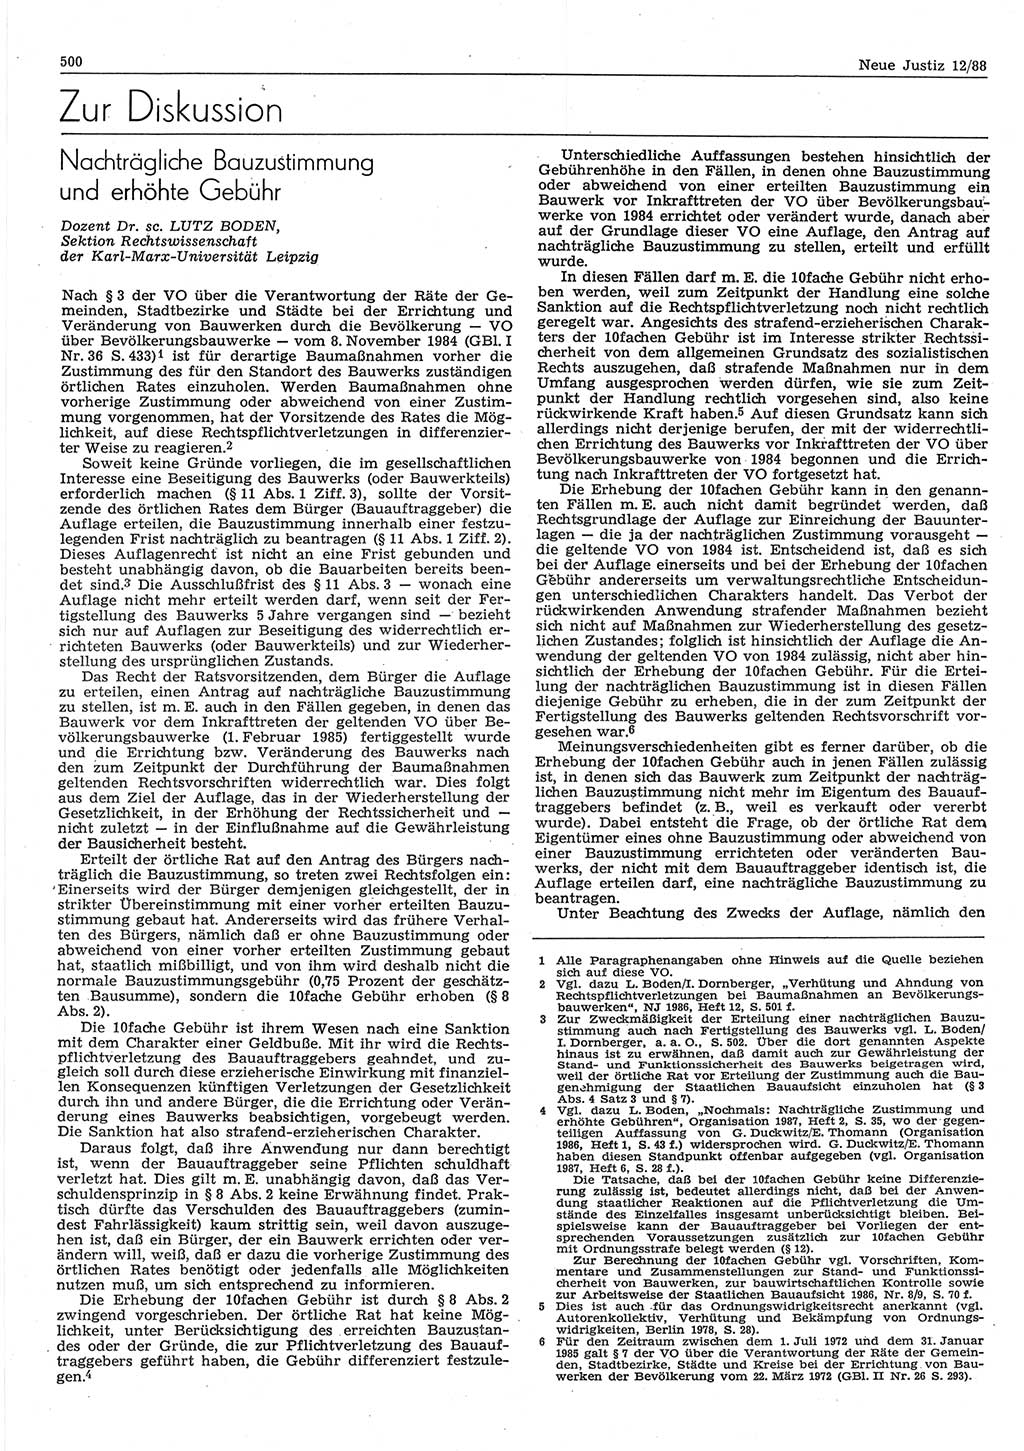 Neue Justiz (NJ), Zeitschrift für sozialistisches Recht und Gesetzlichkeit [Deutsche Demokratische Republik (DDR)], 42. Jahrgang 1988, Seite 500 (NJ DDR 1988, S. 500)